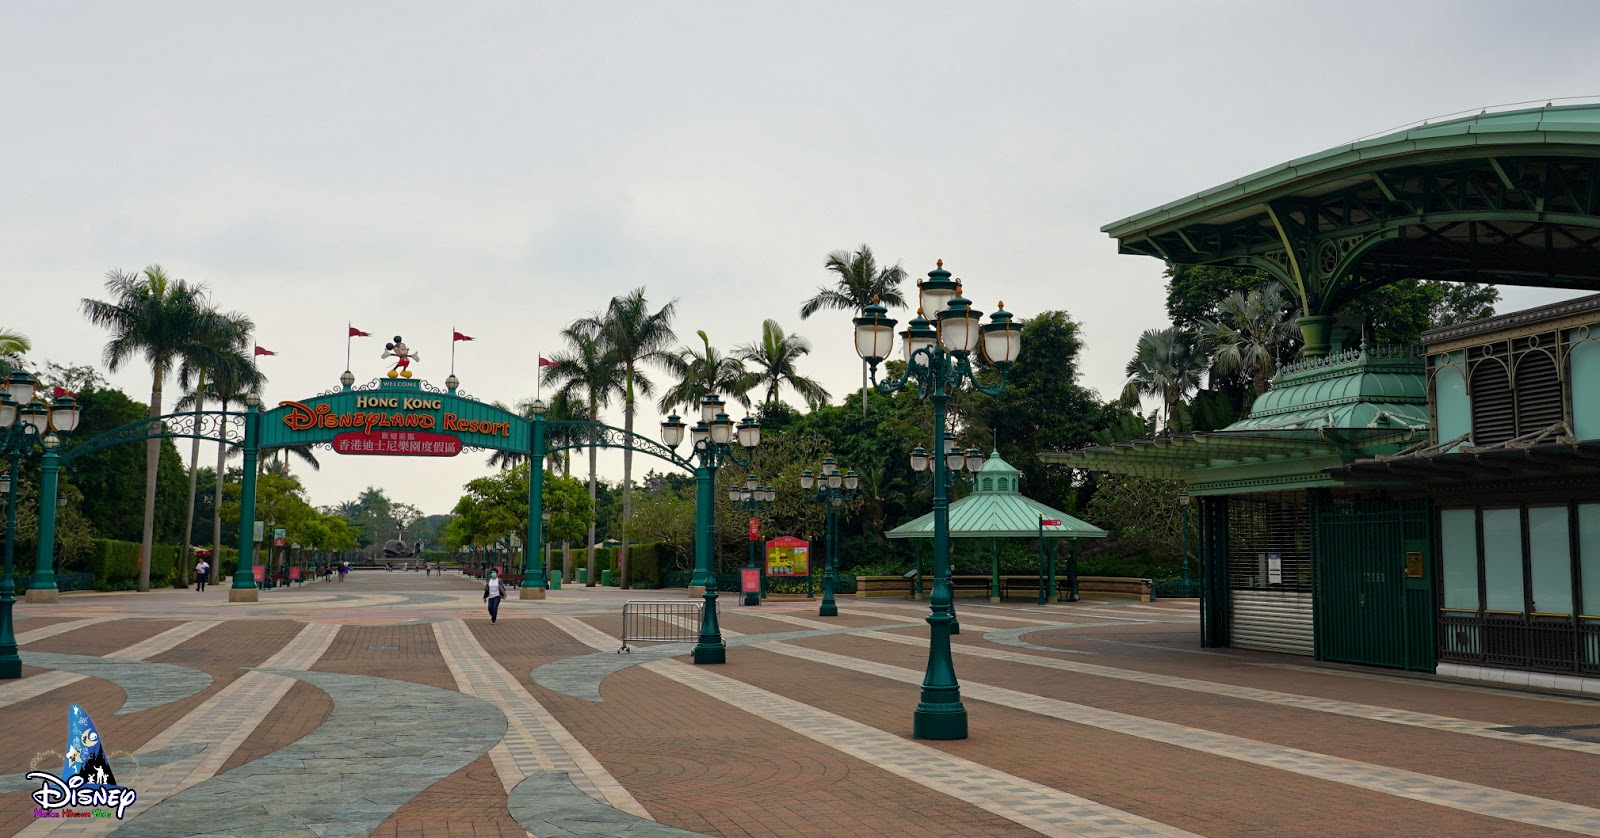 Update Report Hong Kong Disneyland Resort April 2020 Disney Magical Kingdom Blog 1